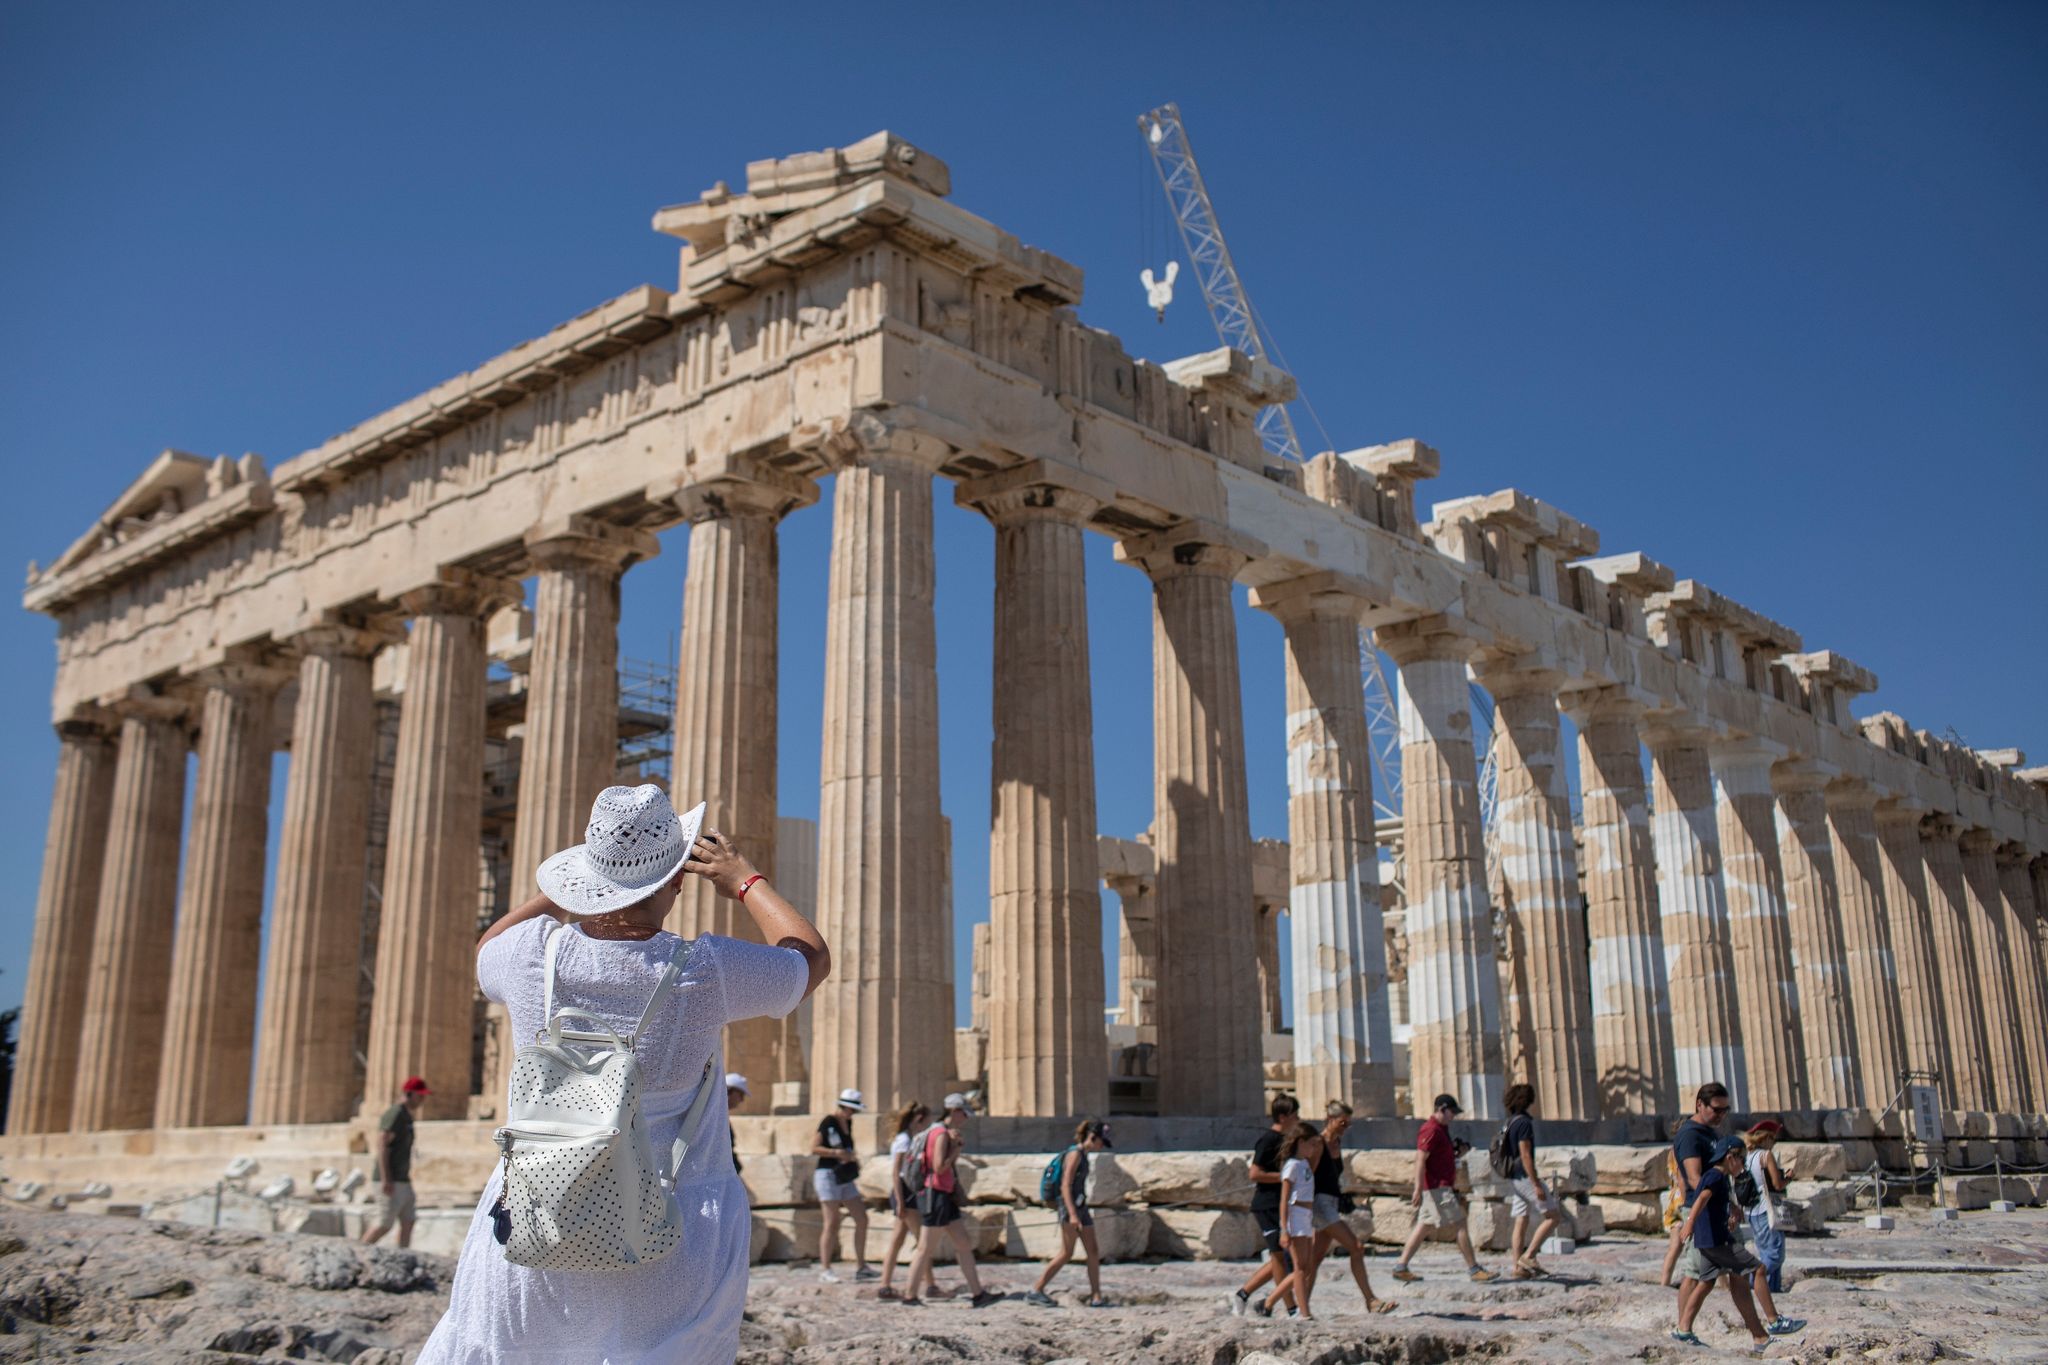 Im 19. Jahrhundert wurden Teile des Parthenon-Tempels in Athen durch einen Briten abgebaut und an das British Museum in London verkauft.